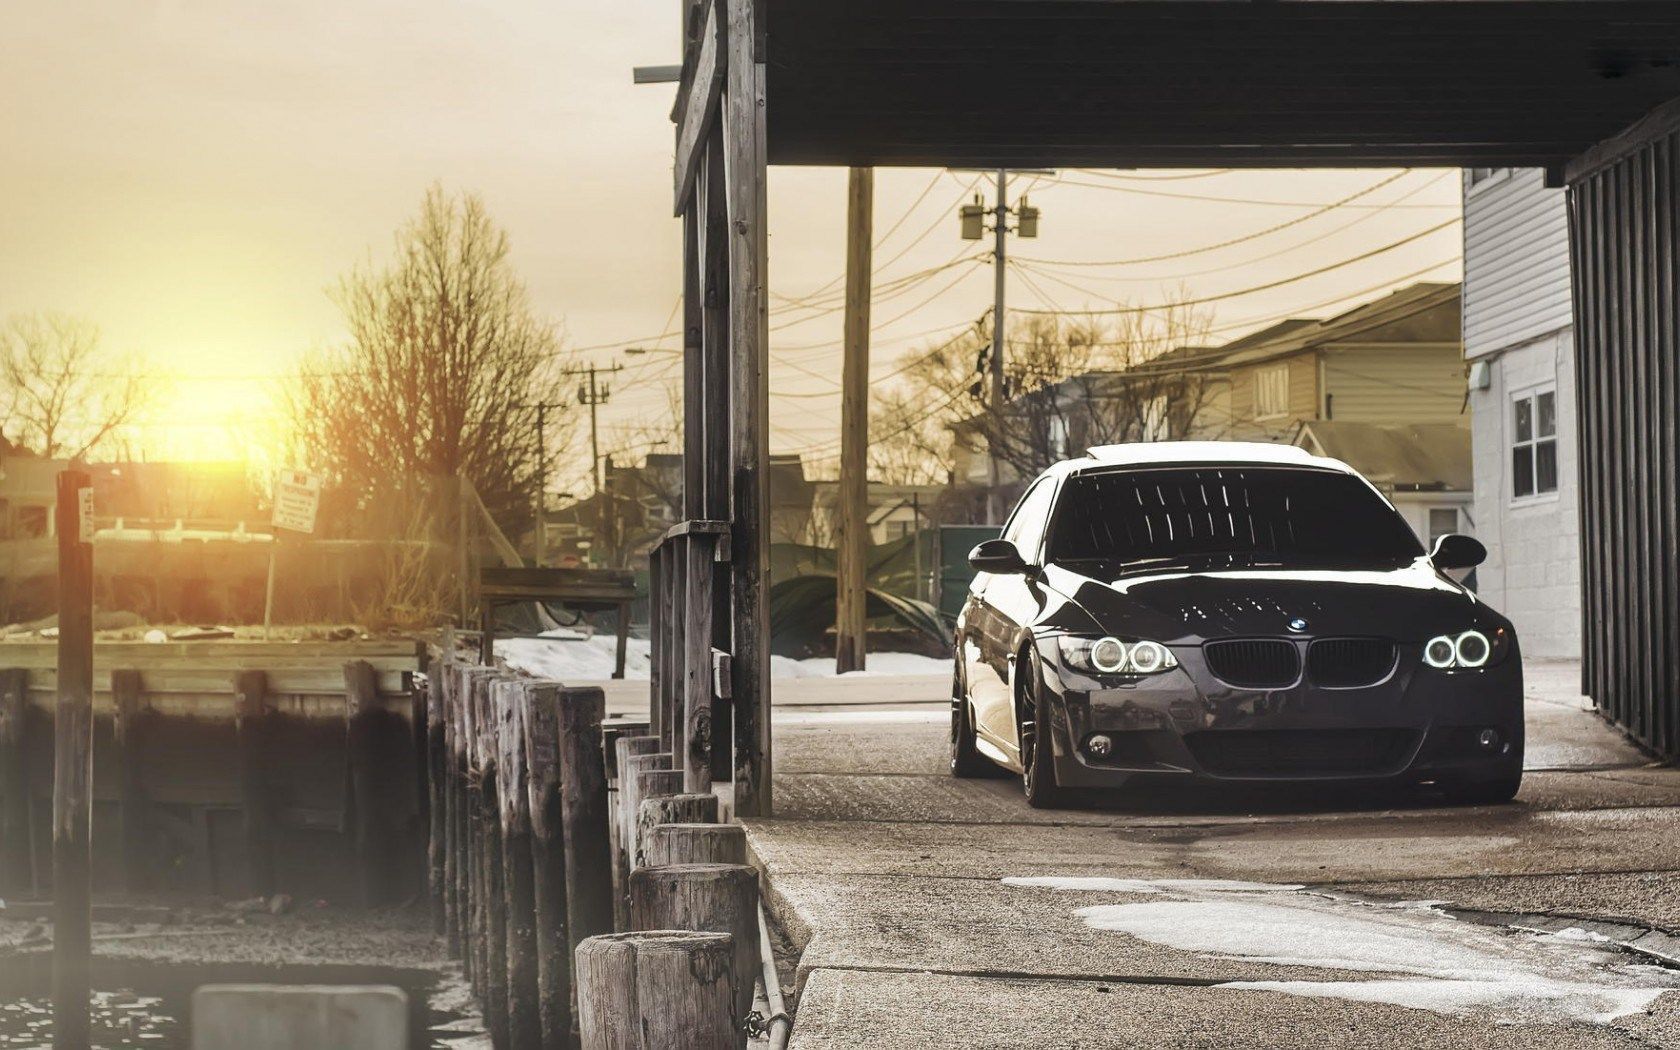 BMW E90 Wallpaper